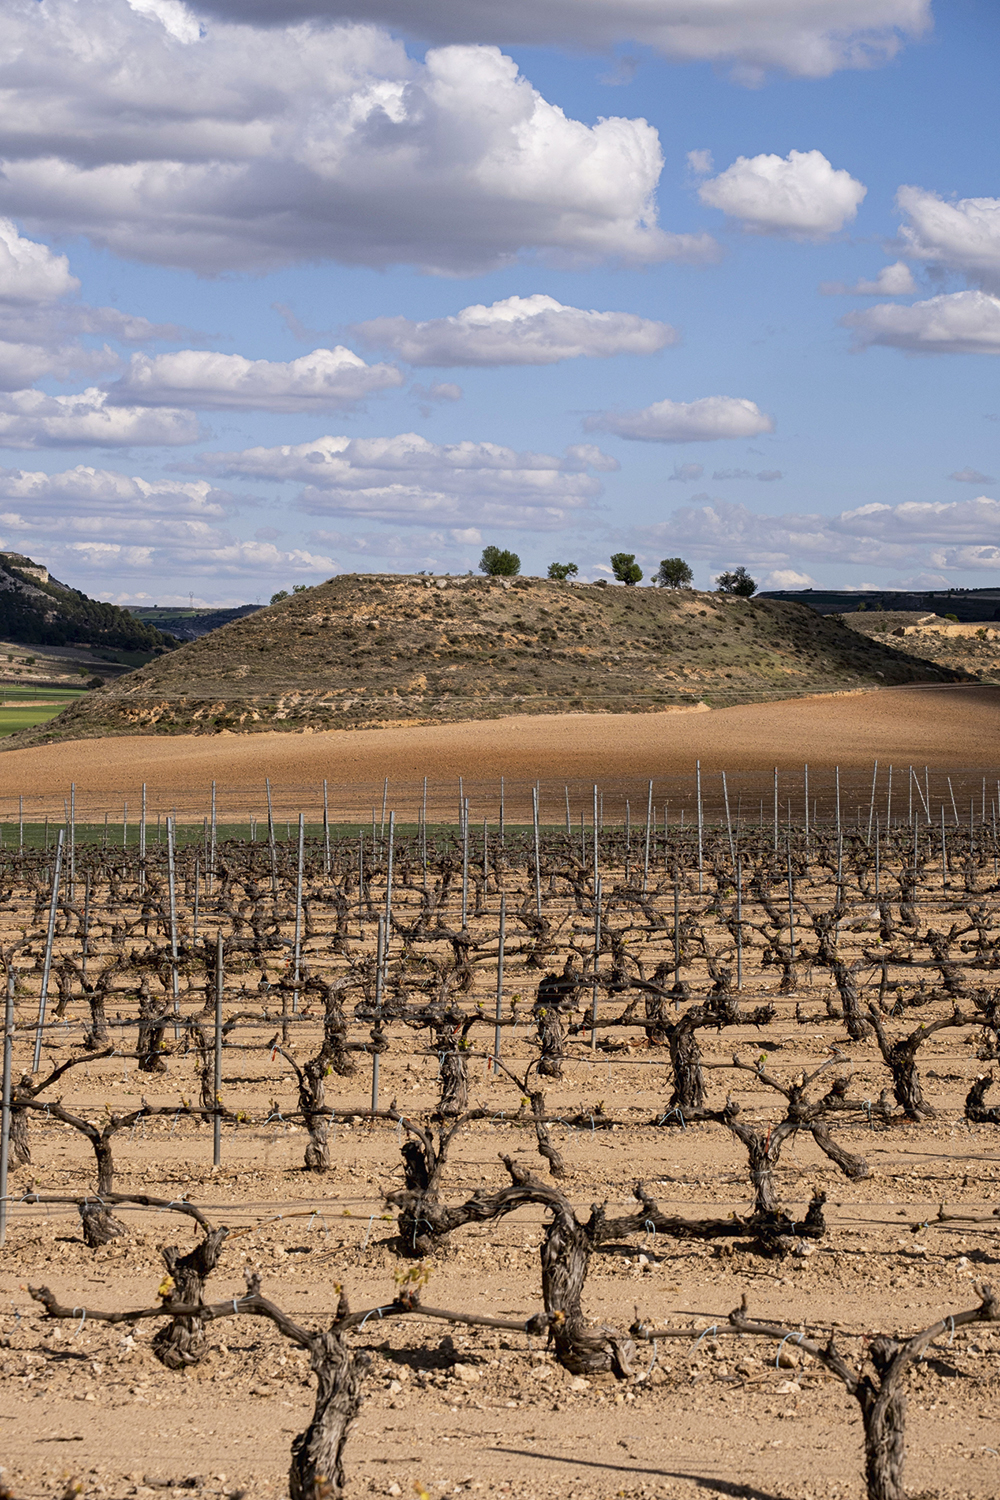 ATÉ O VINHO - Seca domina a paisagem na Espanha: sem uvas, a safra deste ano ficará comprometida